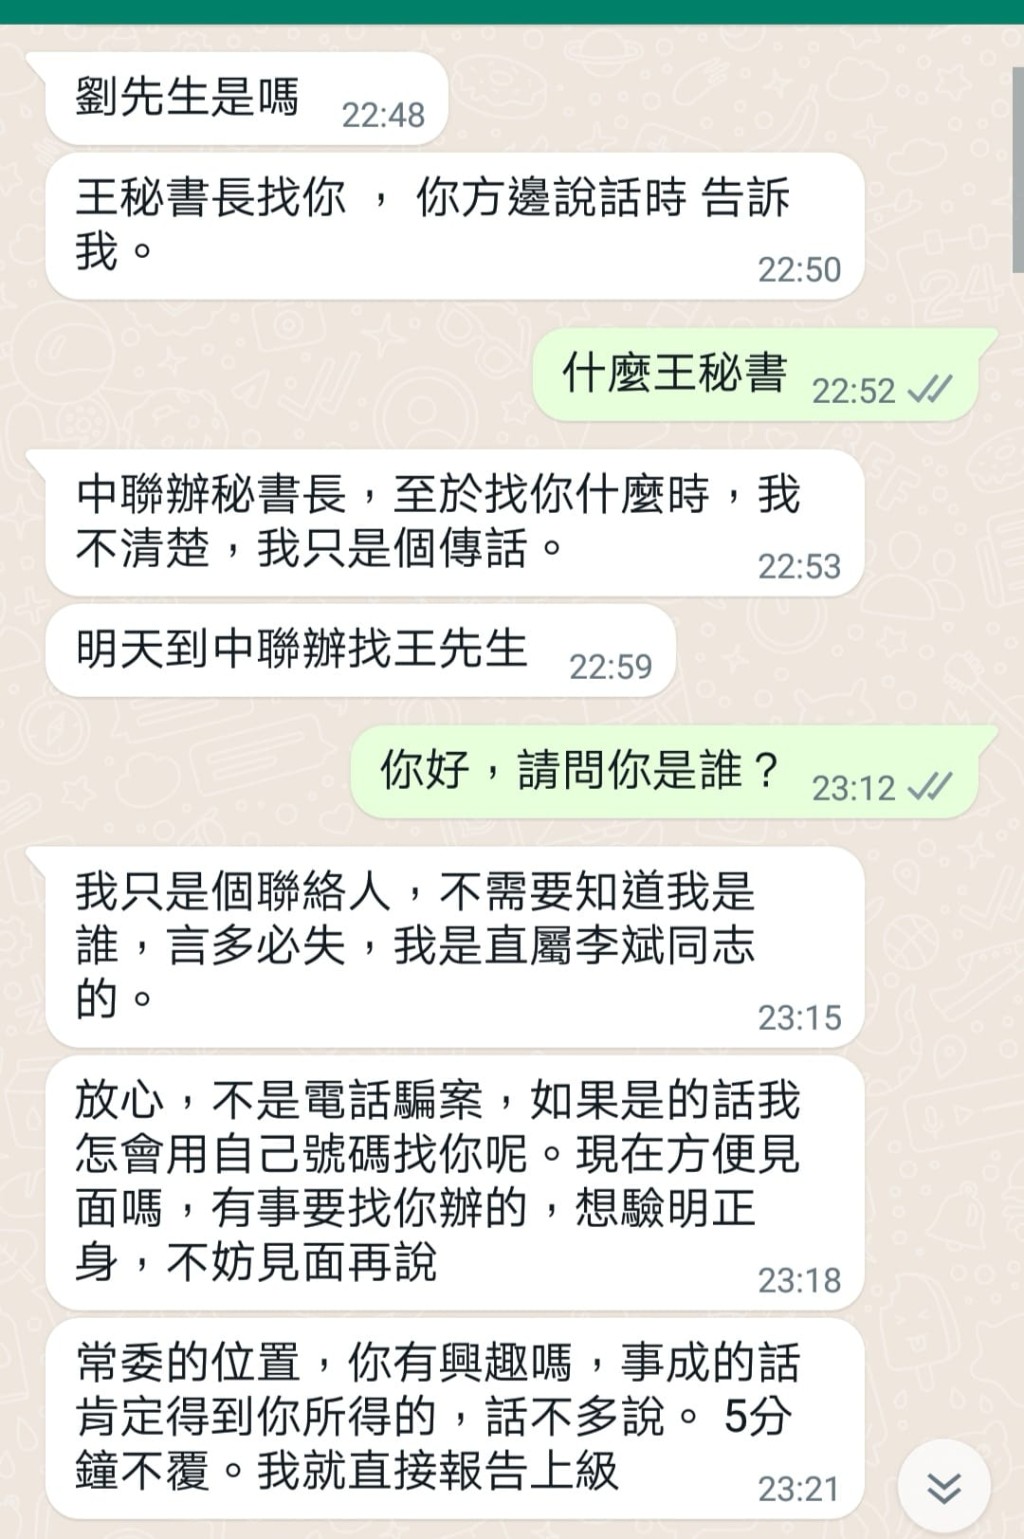 劉國勳於社交媒體展示與騙徒的對話。